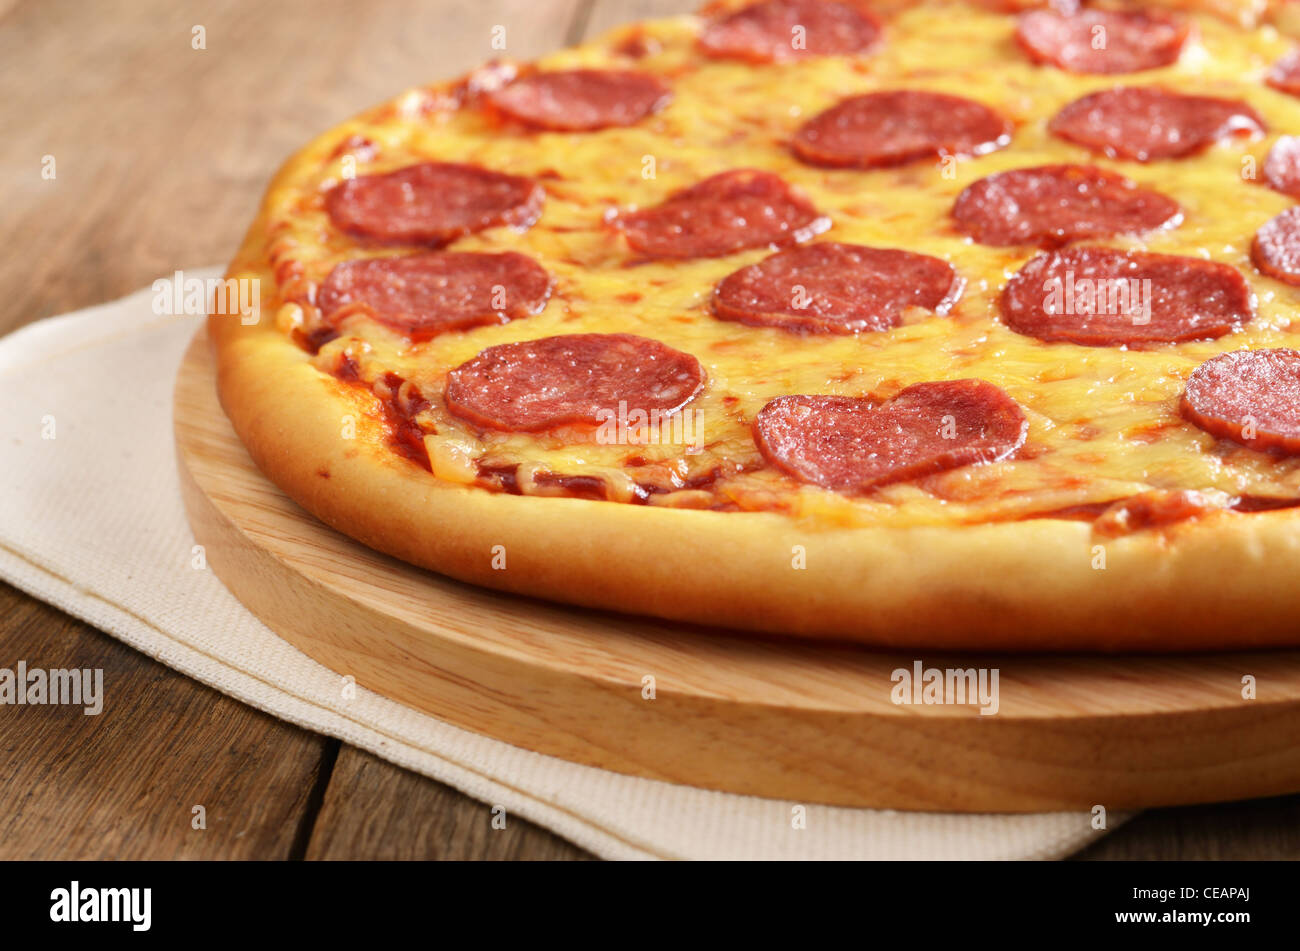 что нужно для приготовления пиццы пепперони в домашних условиях фото 96